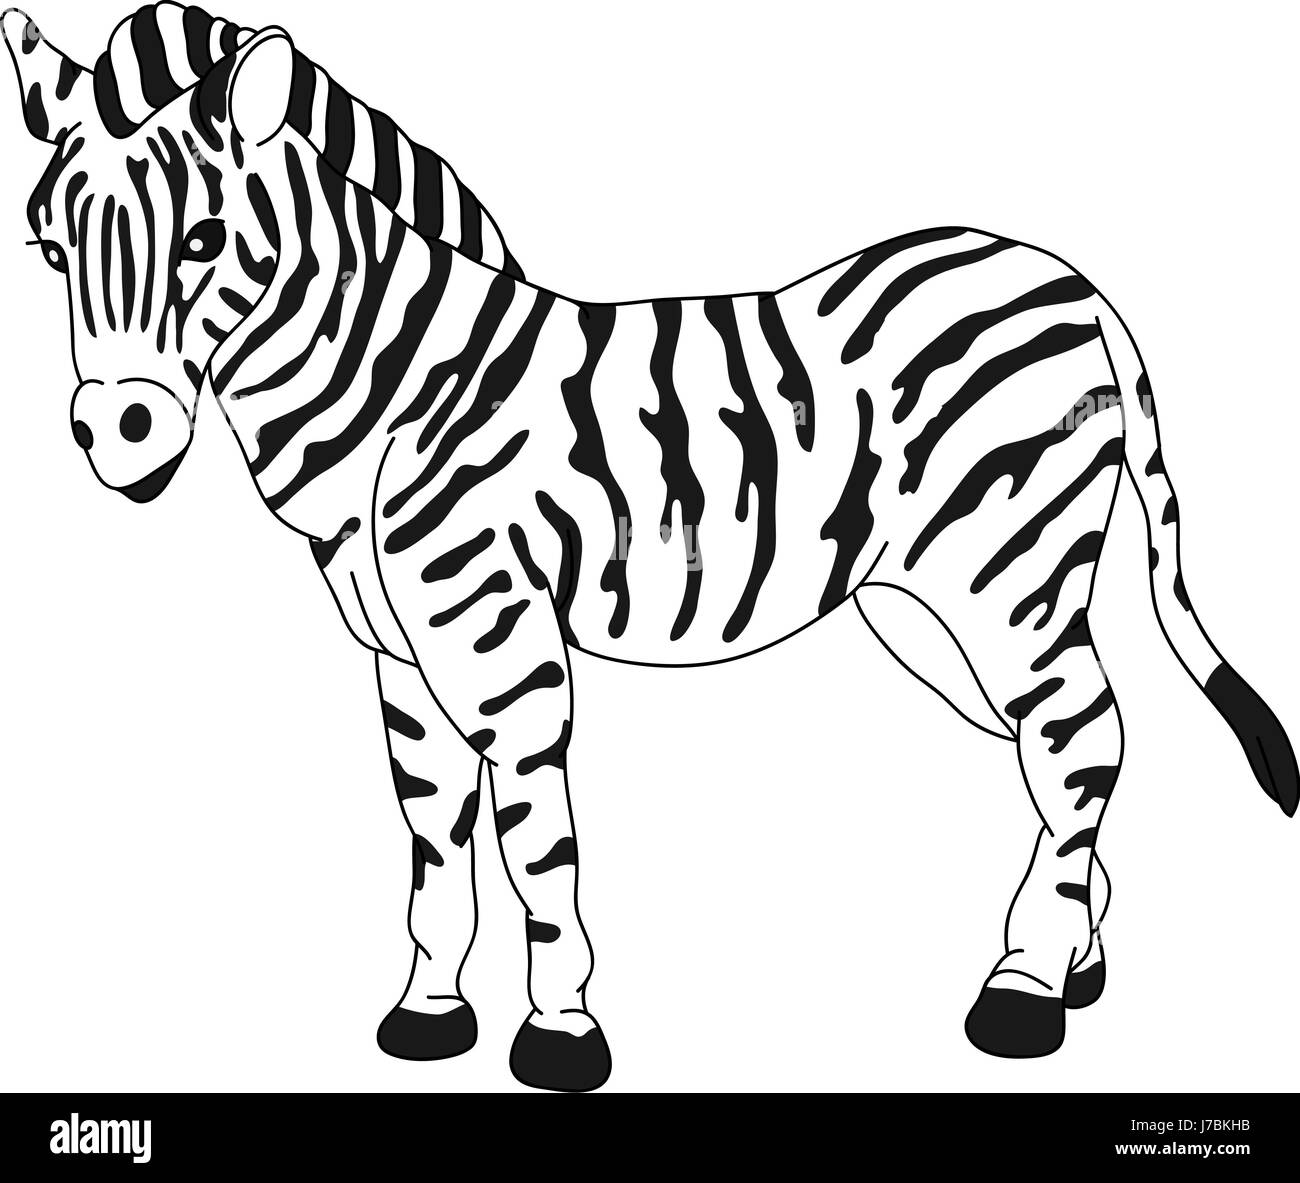 Illustration isolé zebra cartoon dessiner art graphique unique cheval isolé Banque D'Images